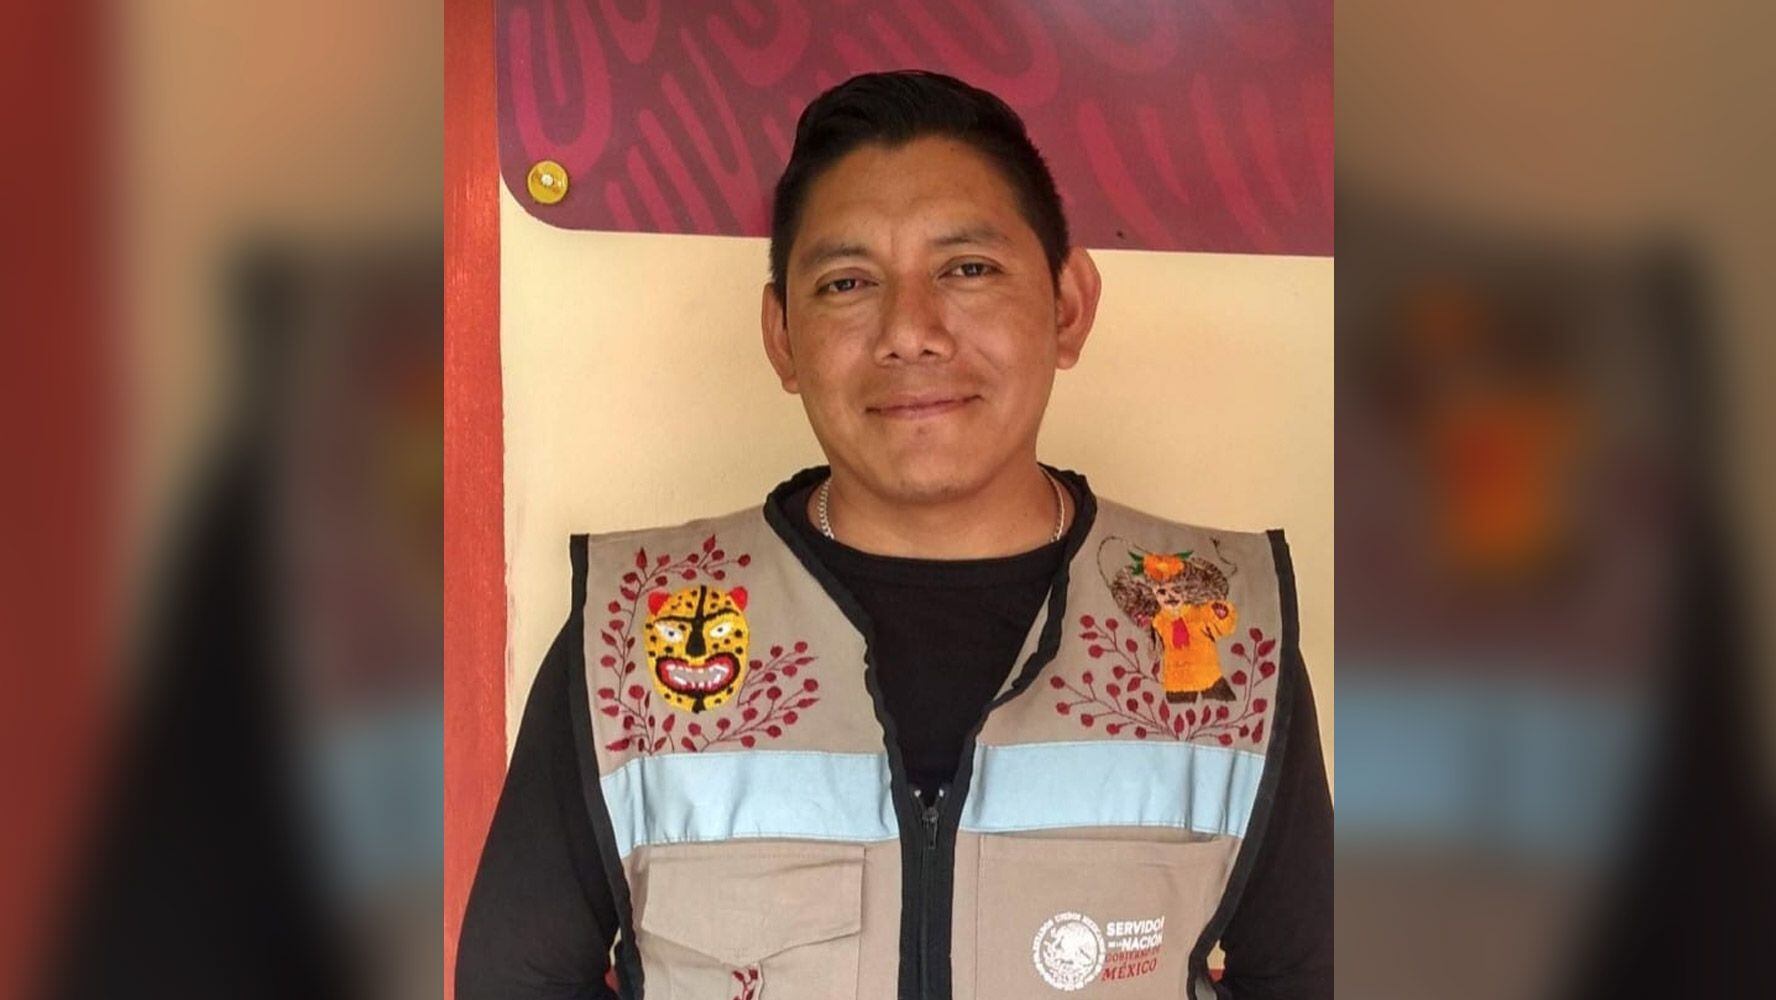 Tomás Morales Patrón, aspirante de Morena en Chilapa, Guerrero, es asesinado a balazos